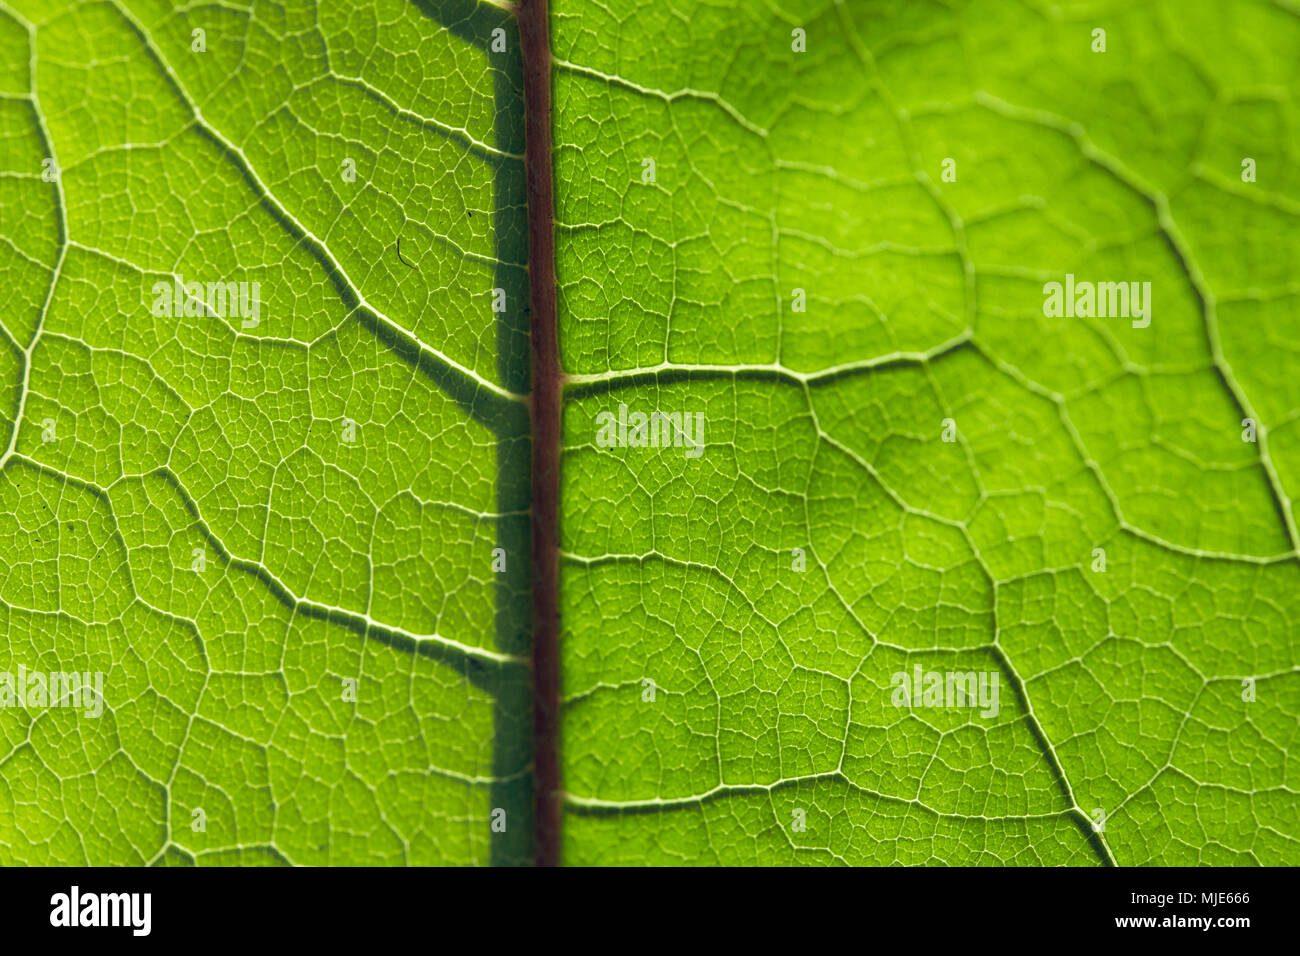 Verzweigung Adern eines grünen Blatt, Detail, Nahaufnahme Stockfoto